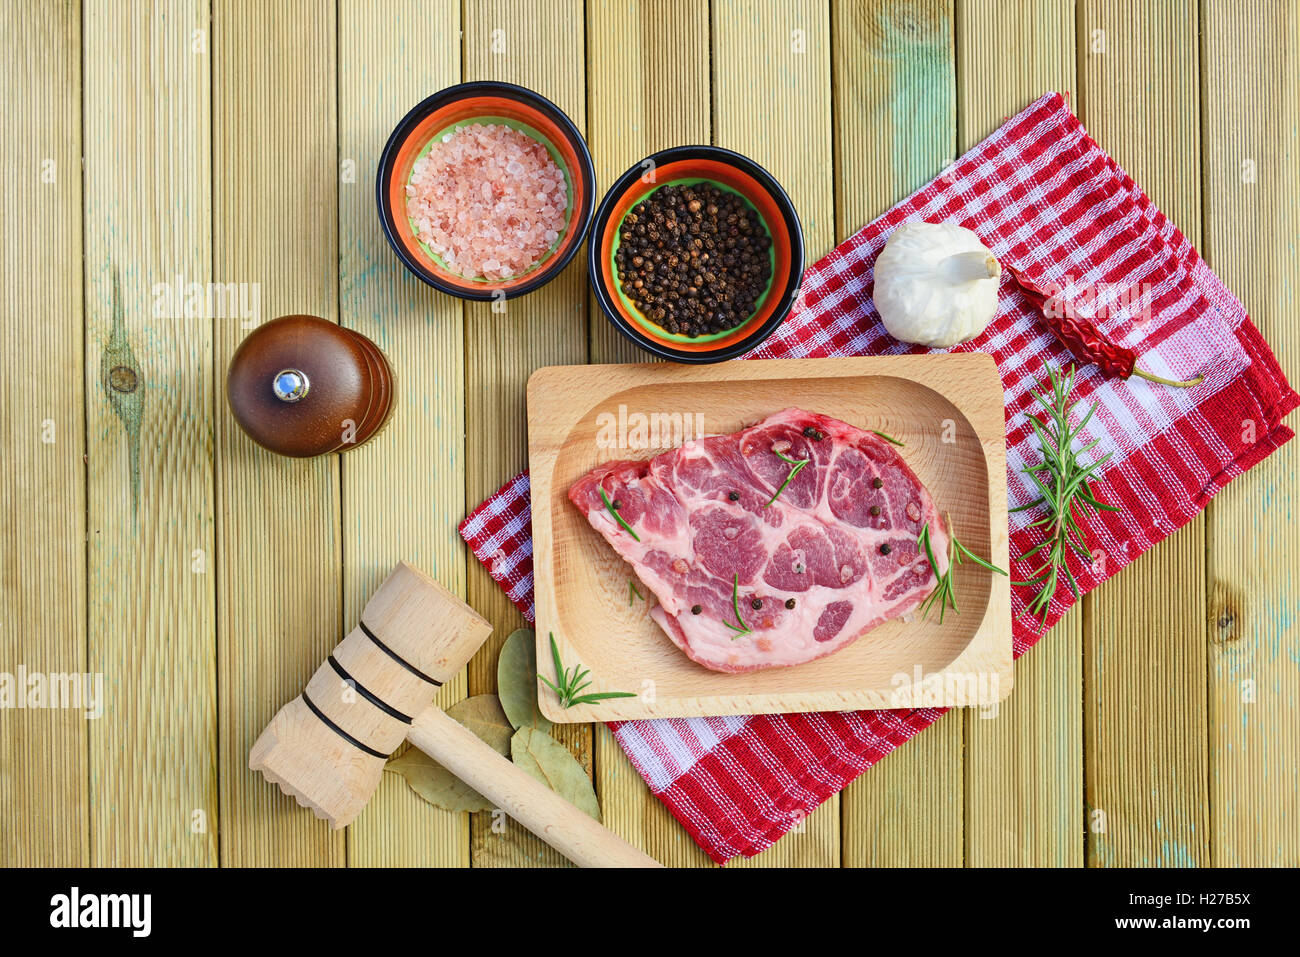 La viande de porc cru sur plaque de bois, moulin à poivre, romarin, épices et un marteau sur fond de bois Banque D'Images